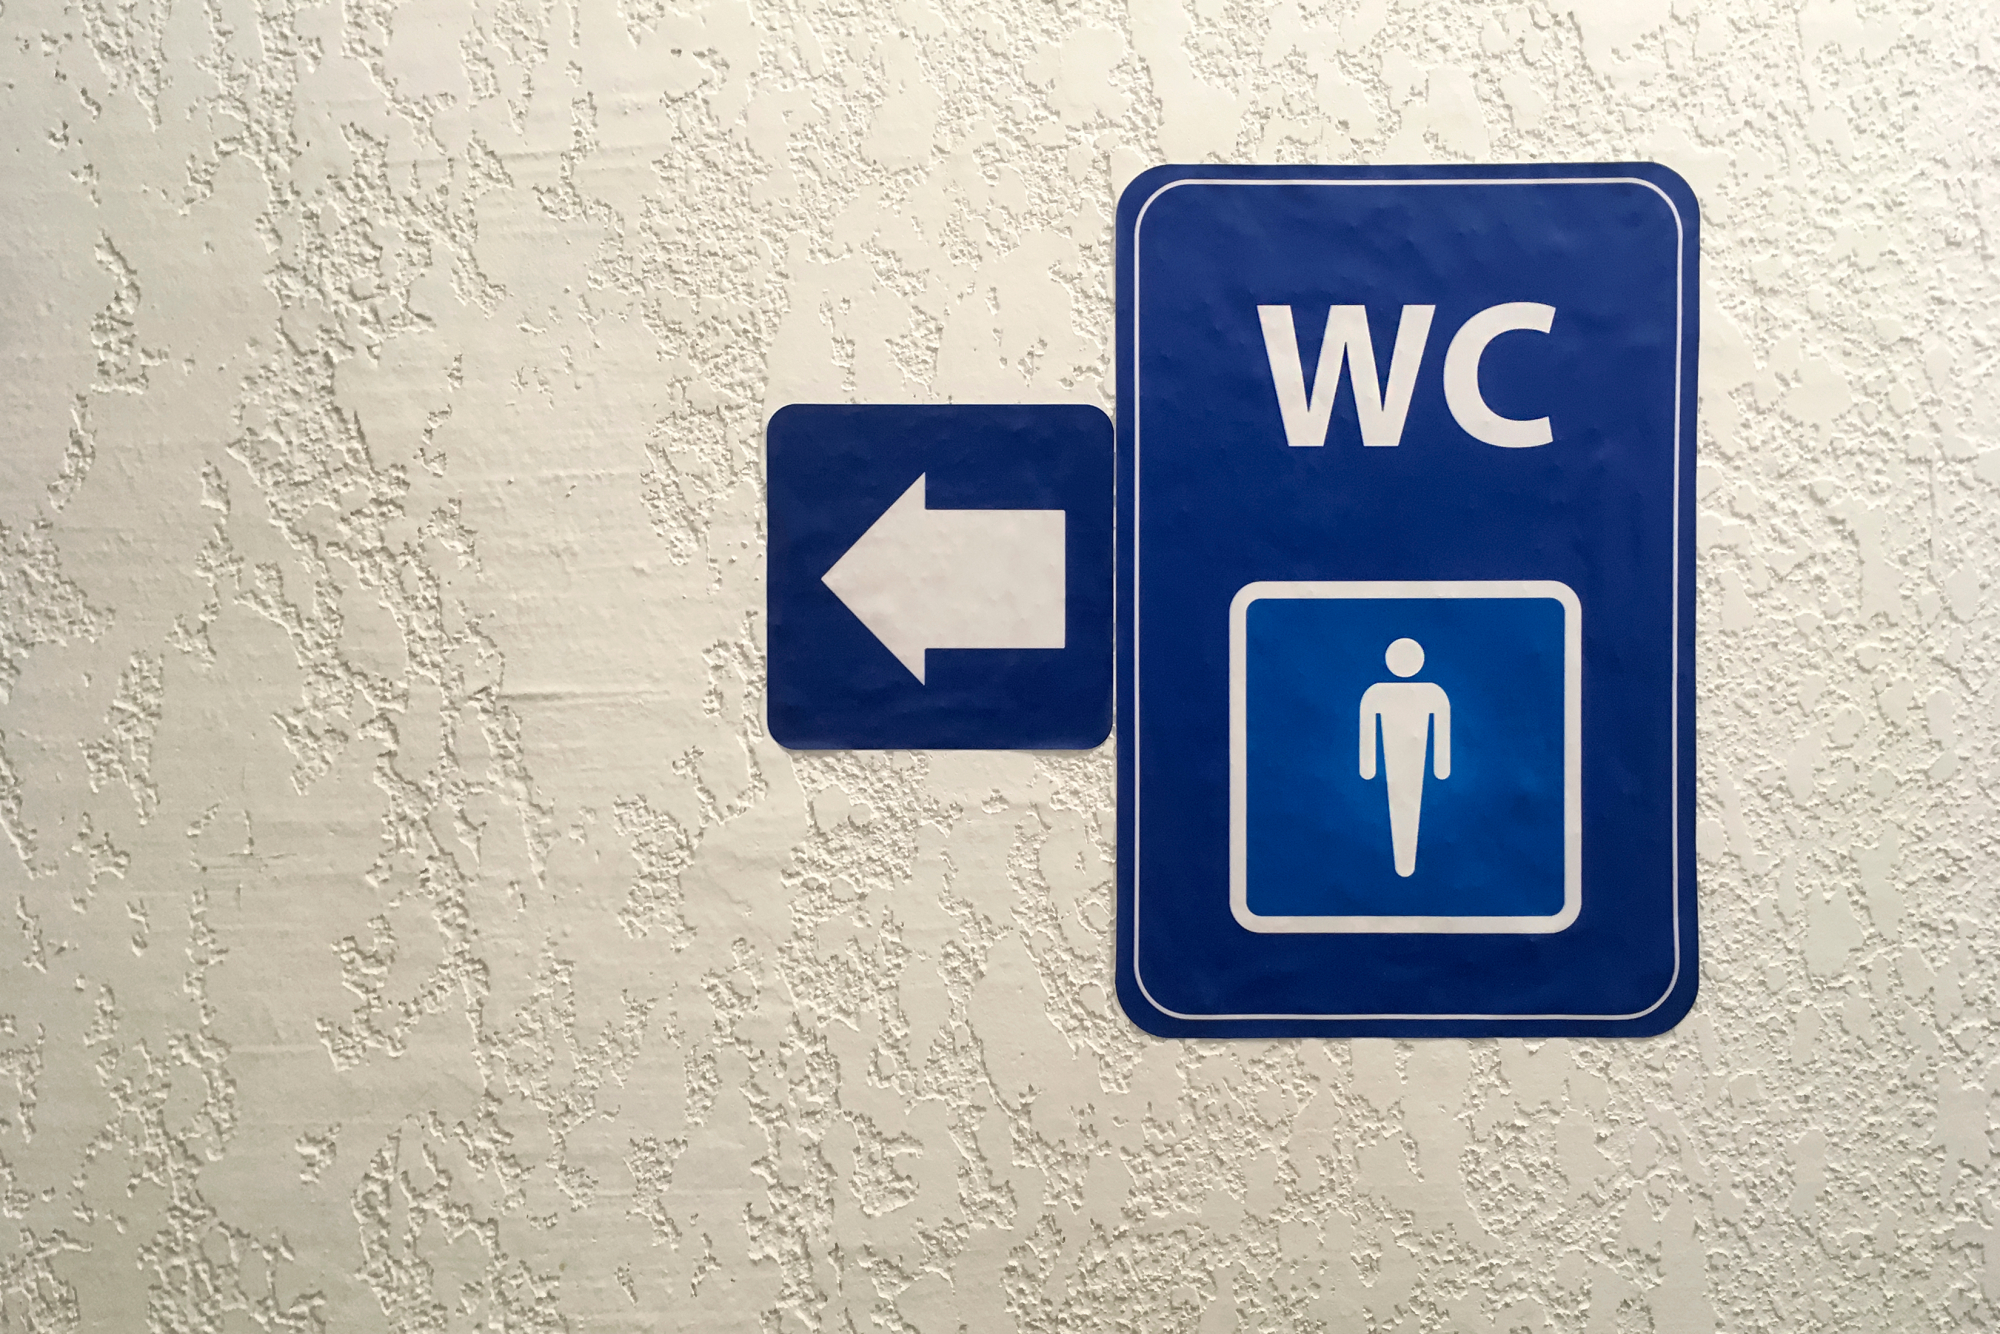 Δεν πάει με τίποτα το μυαλό σας - Τι σημαίνει το WC που βλέπουμε στην πόρτα της τουαλέτας